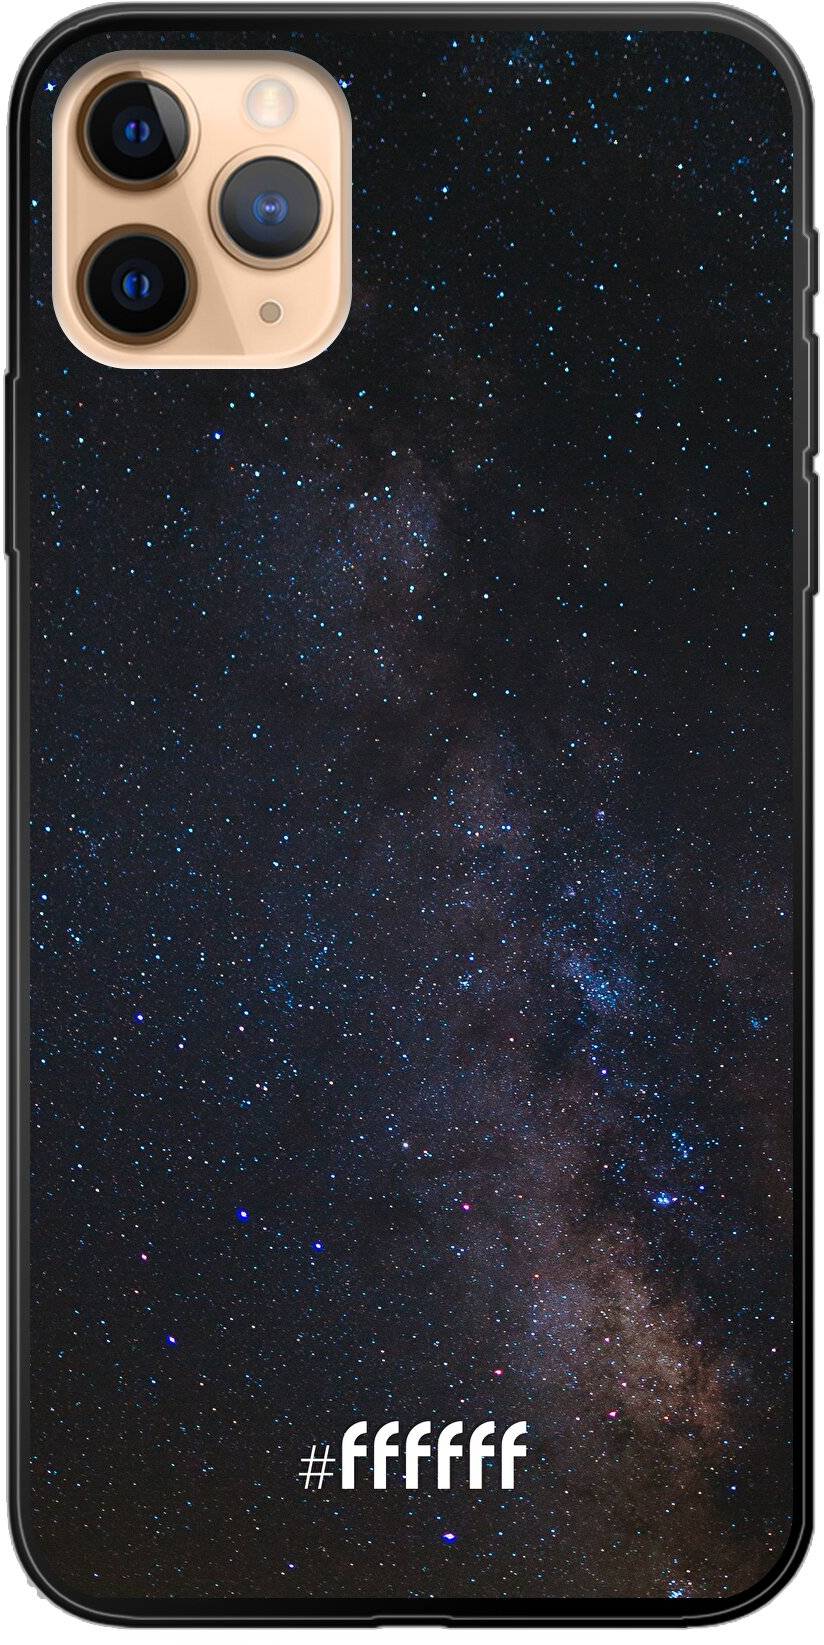 Dark Space iPhone 11 Pro Max